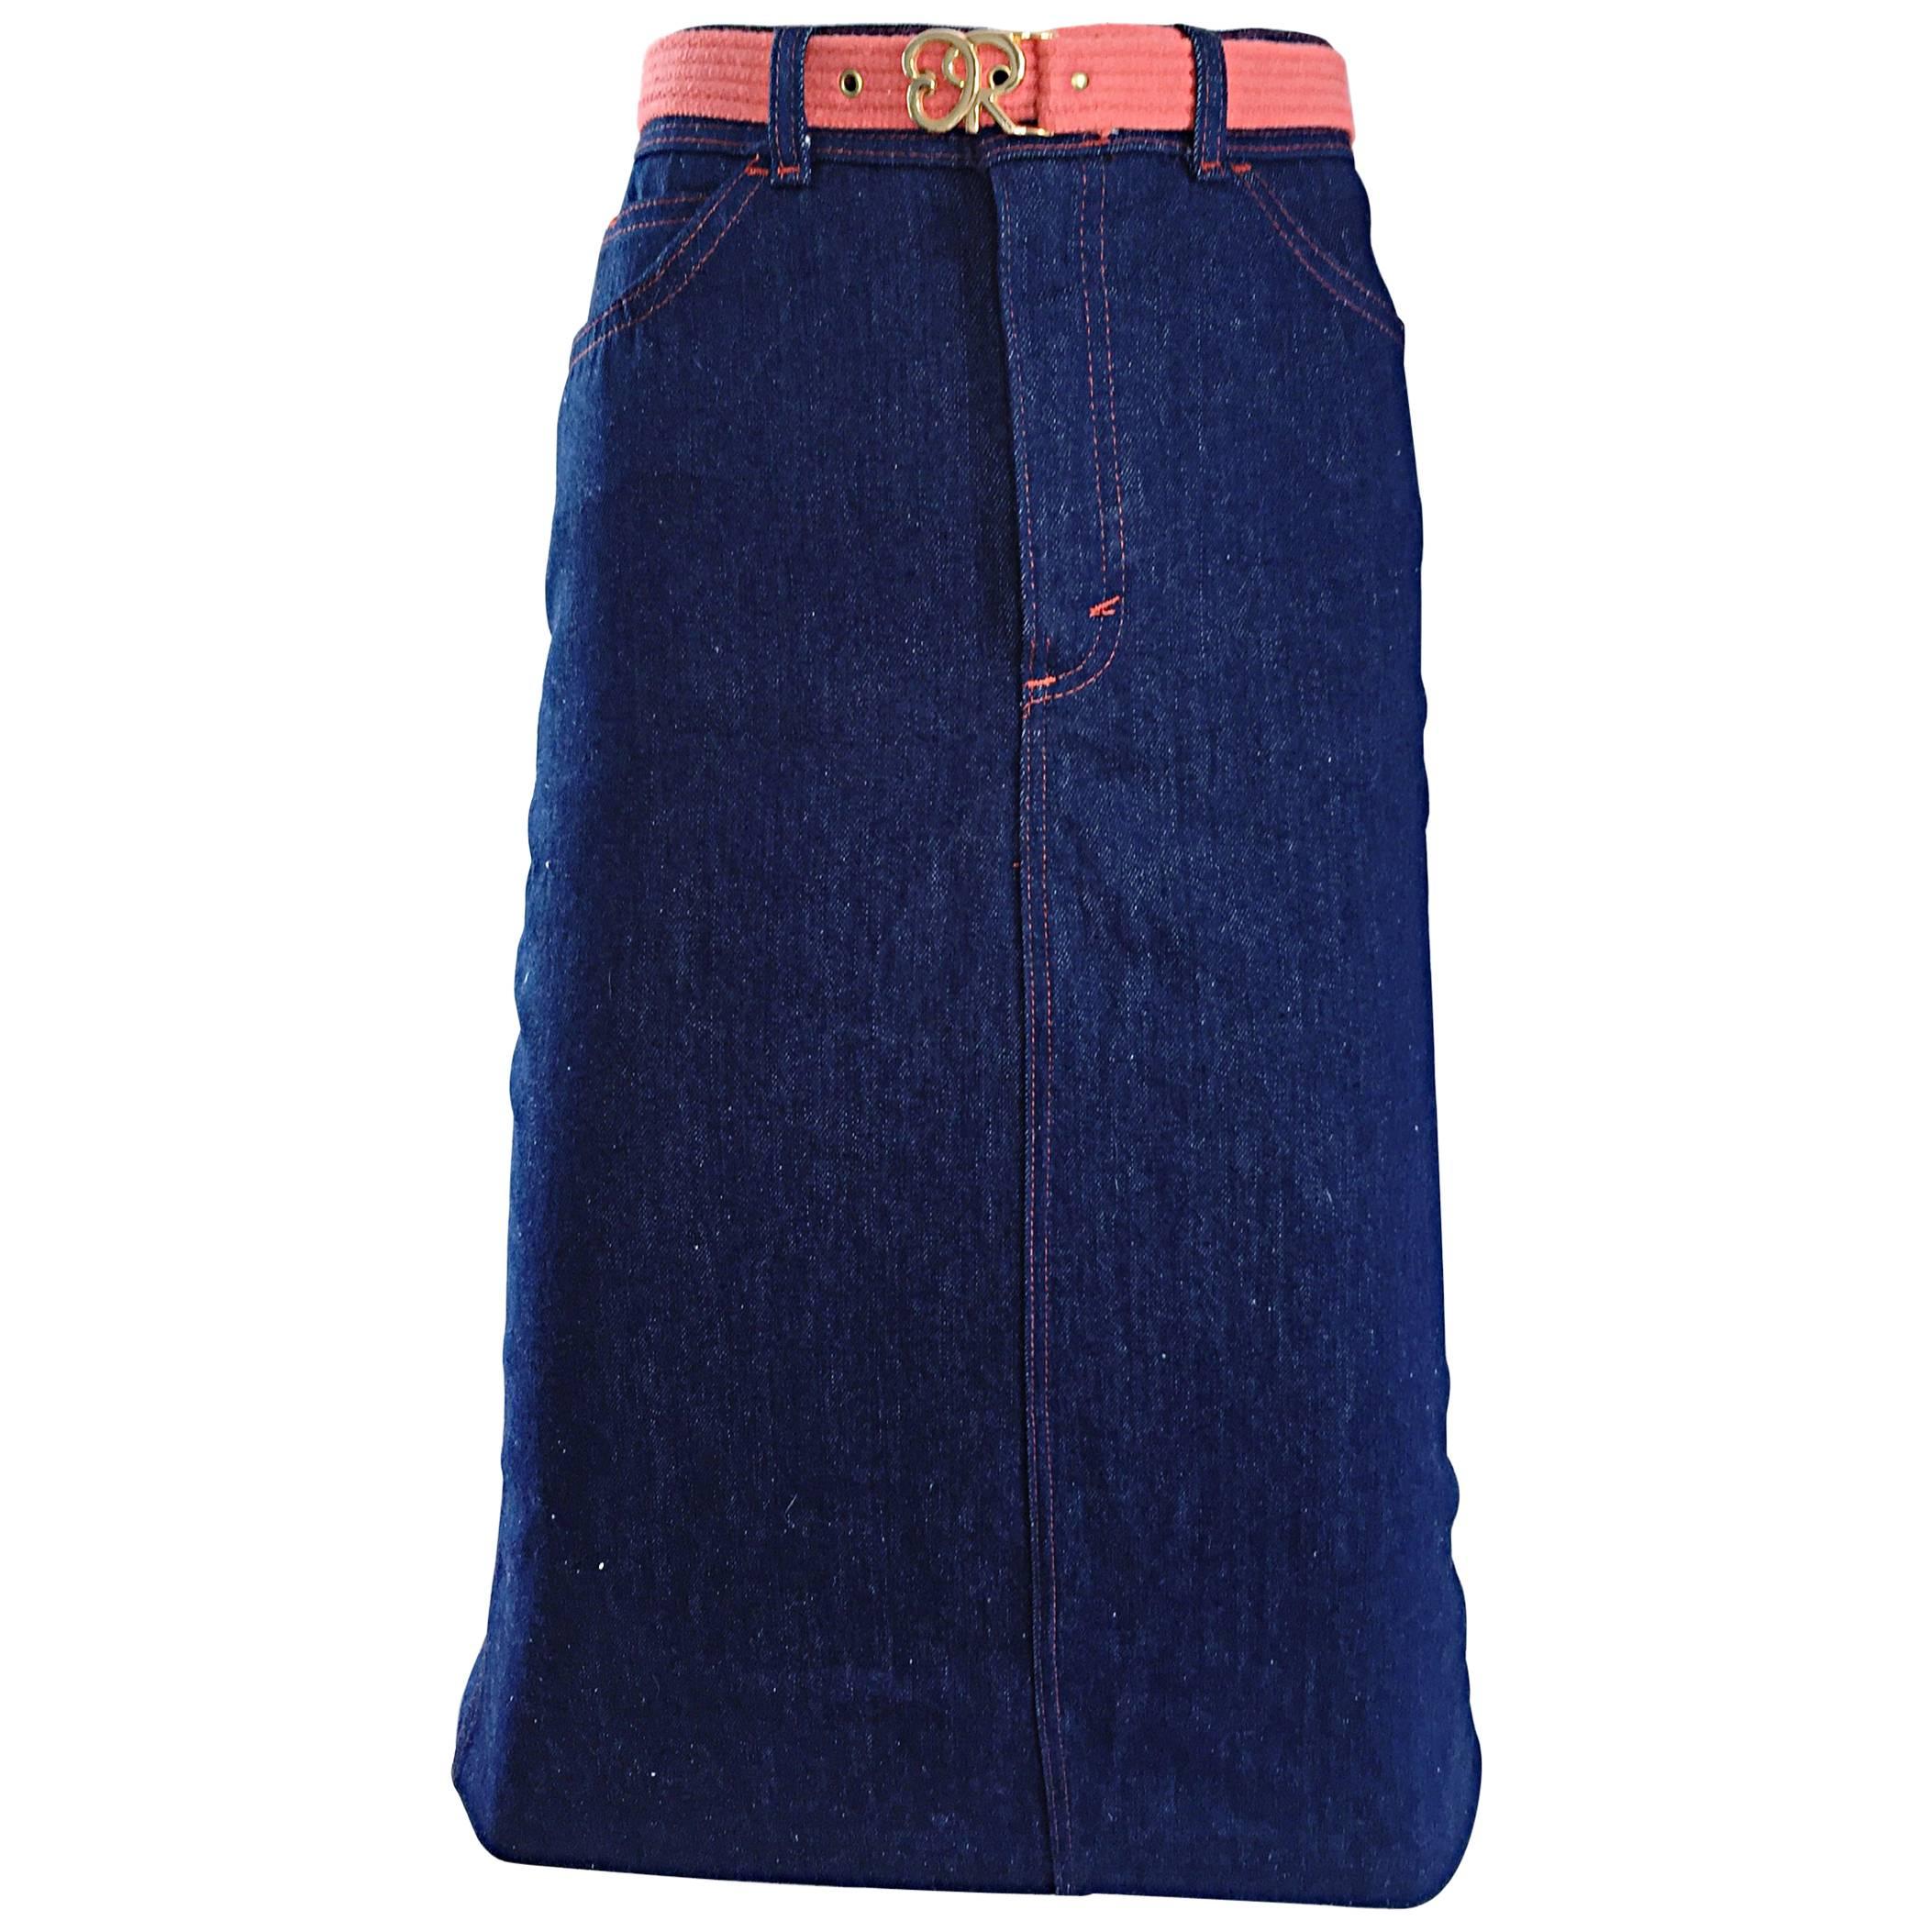 1970s Oscar de la Renta Deadstock Blue Jean Belted Vintage Denim Pencil Skirt For Sale